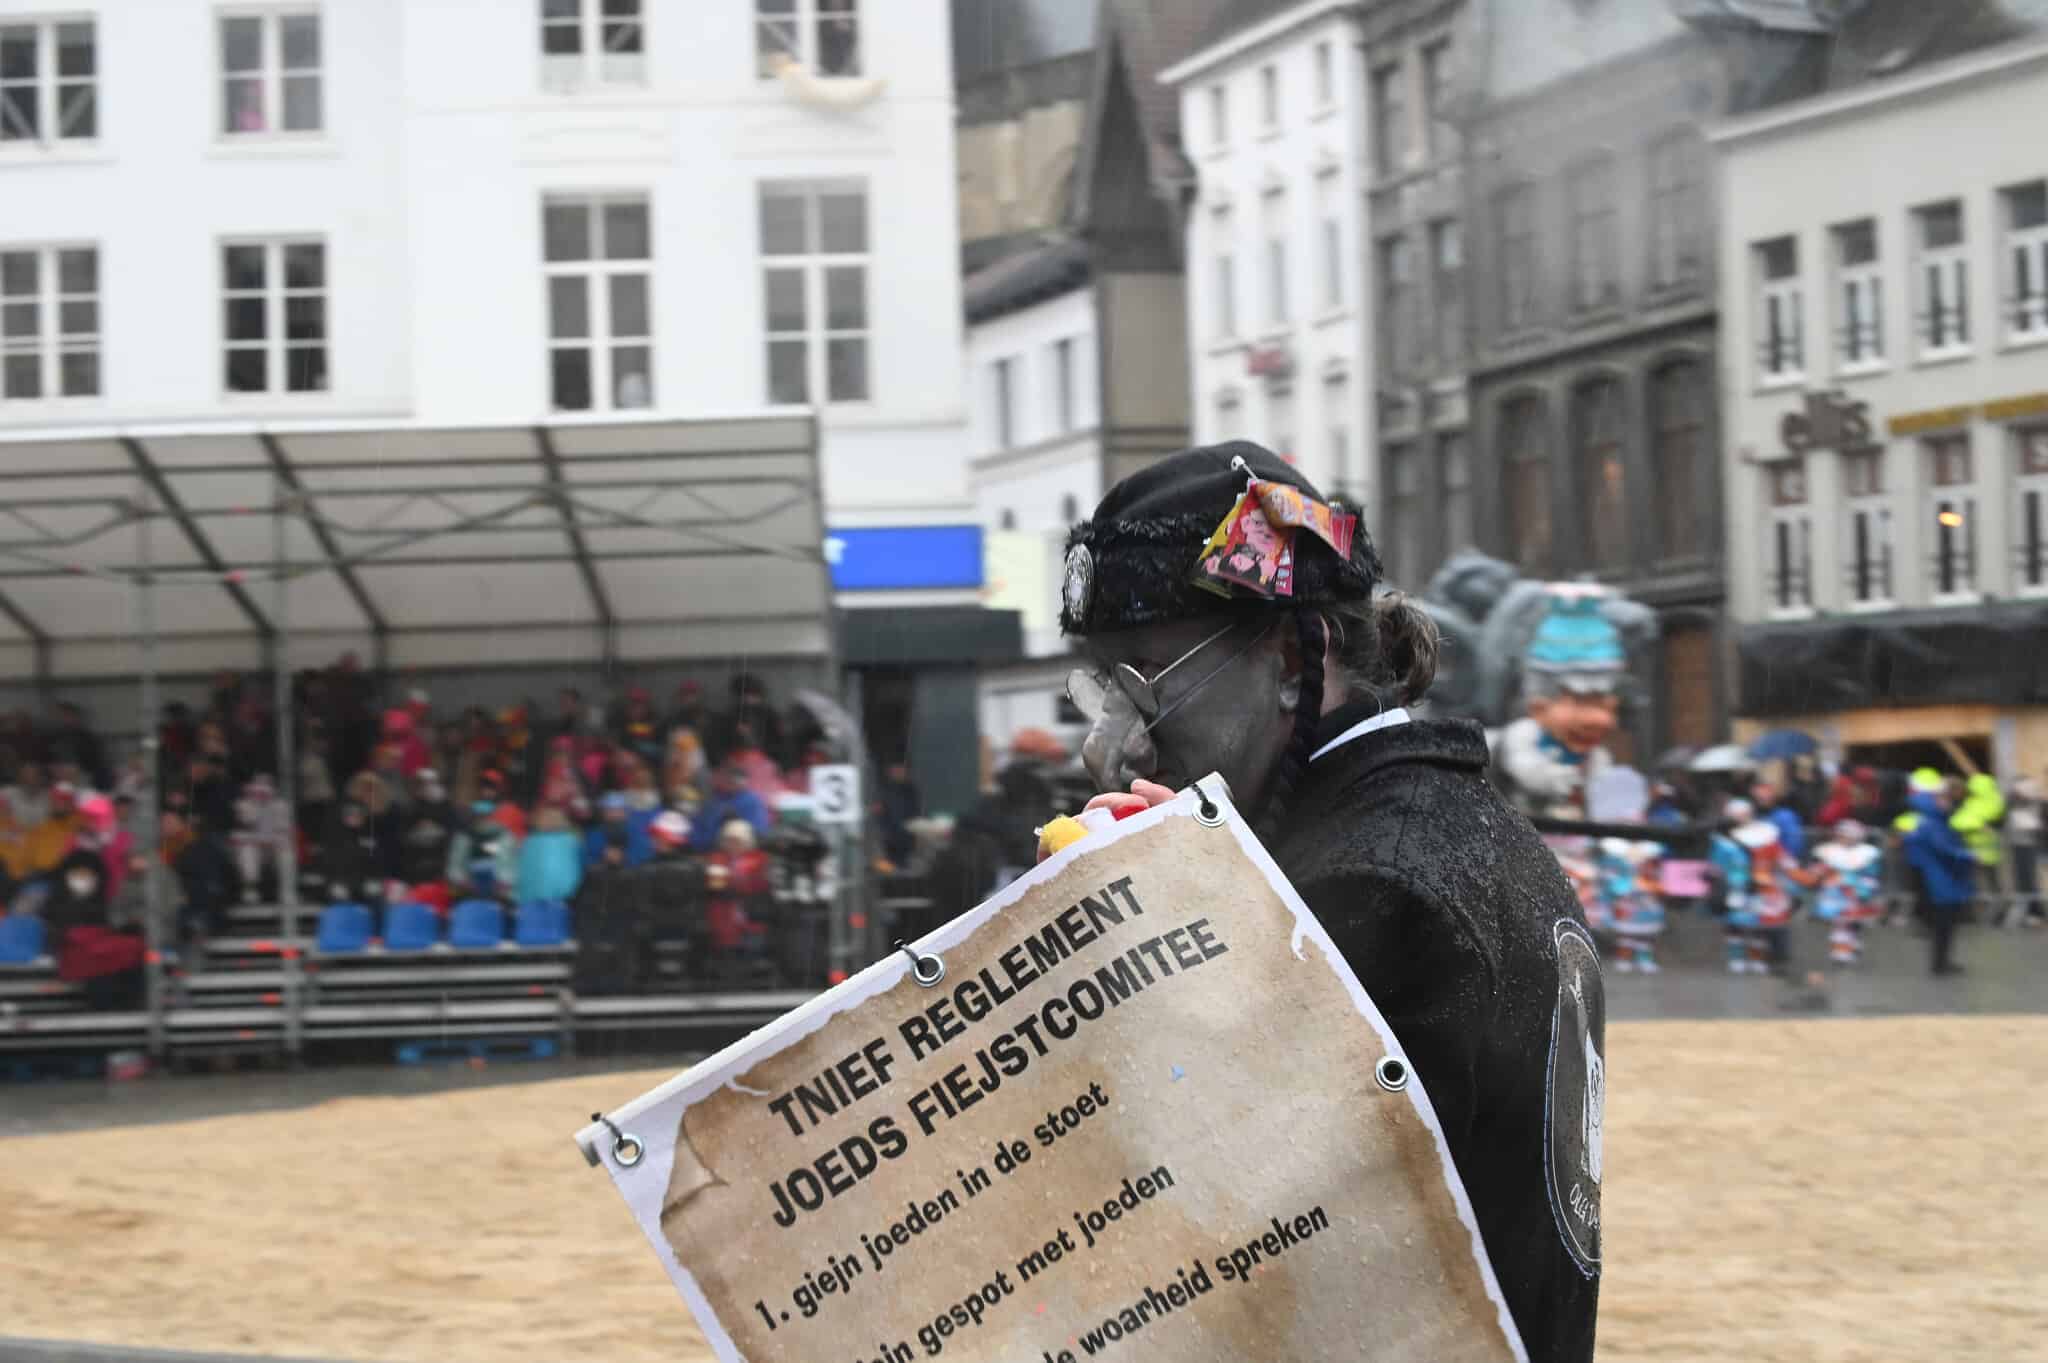 גבר עם אף מלאכותי מעוקל, נושא שלט המזהיר, &quot;אסור לספר את האמת על היהודים&quot; בתהלוכה השנתית של הקרנבל באלסט שבבלגיה, 23 בפברואר 2020 (צילום: כנען ליפשיץ)